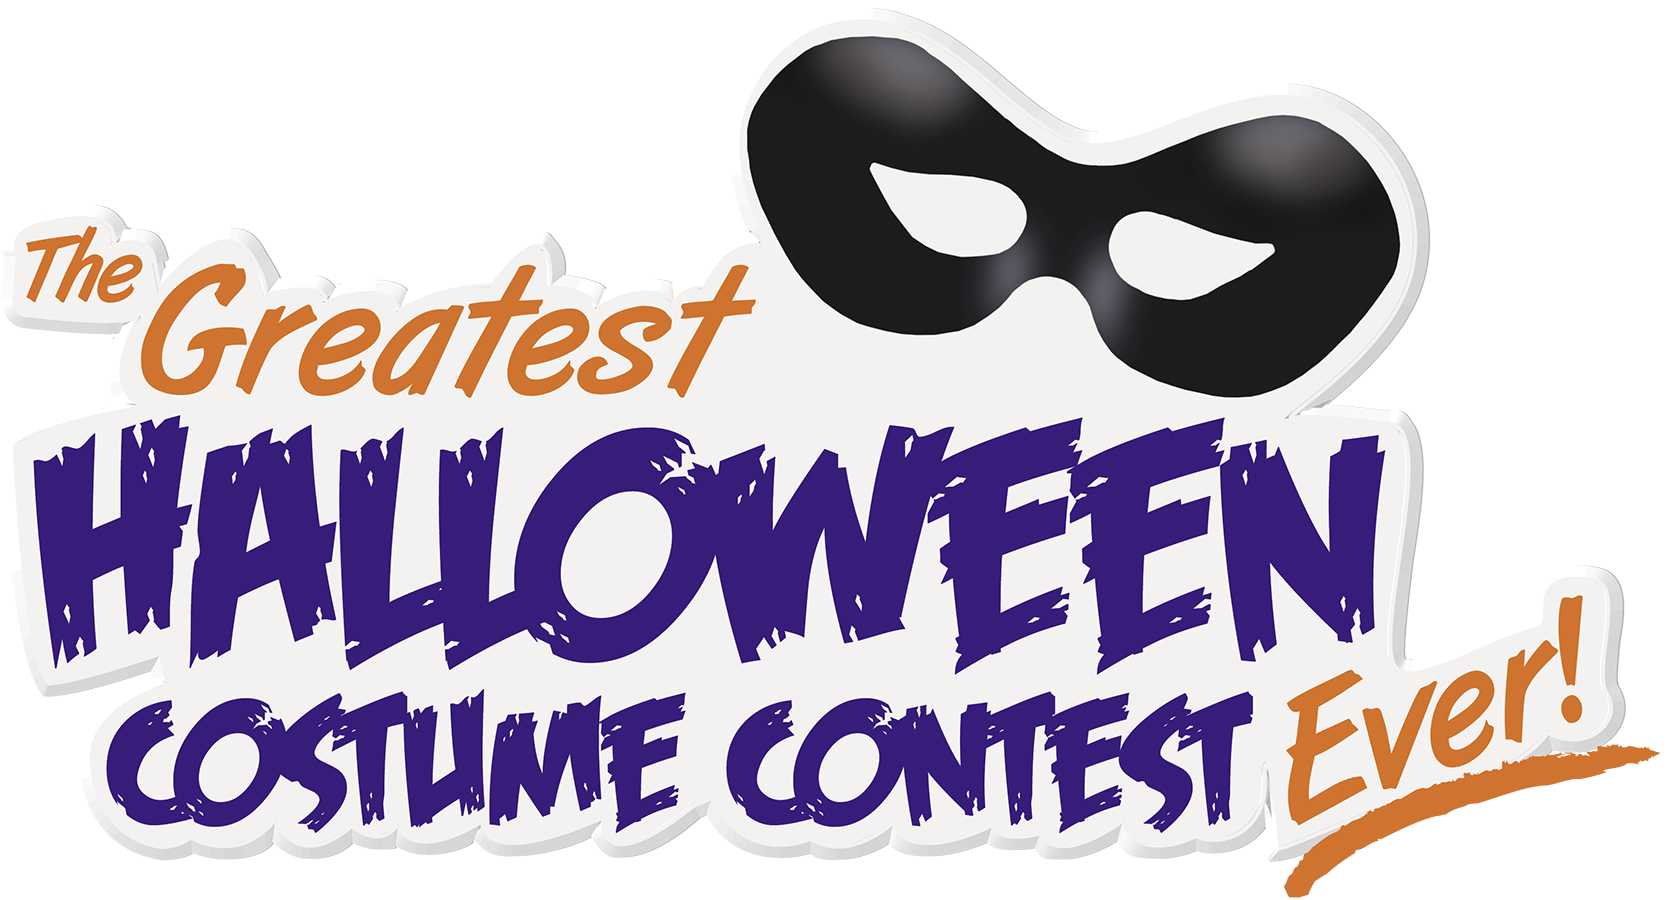 Halloween contest